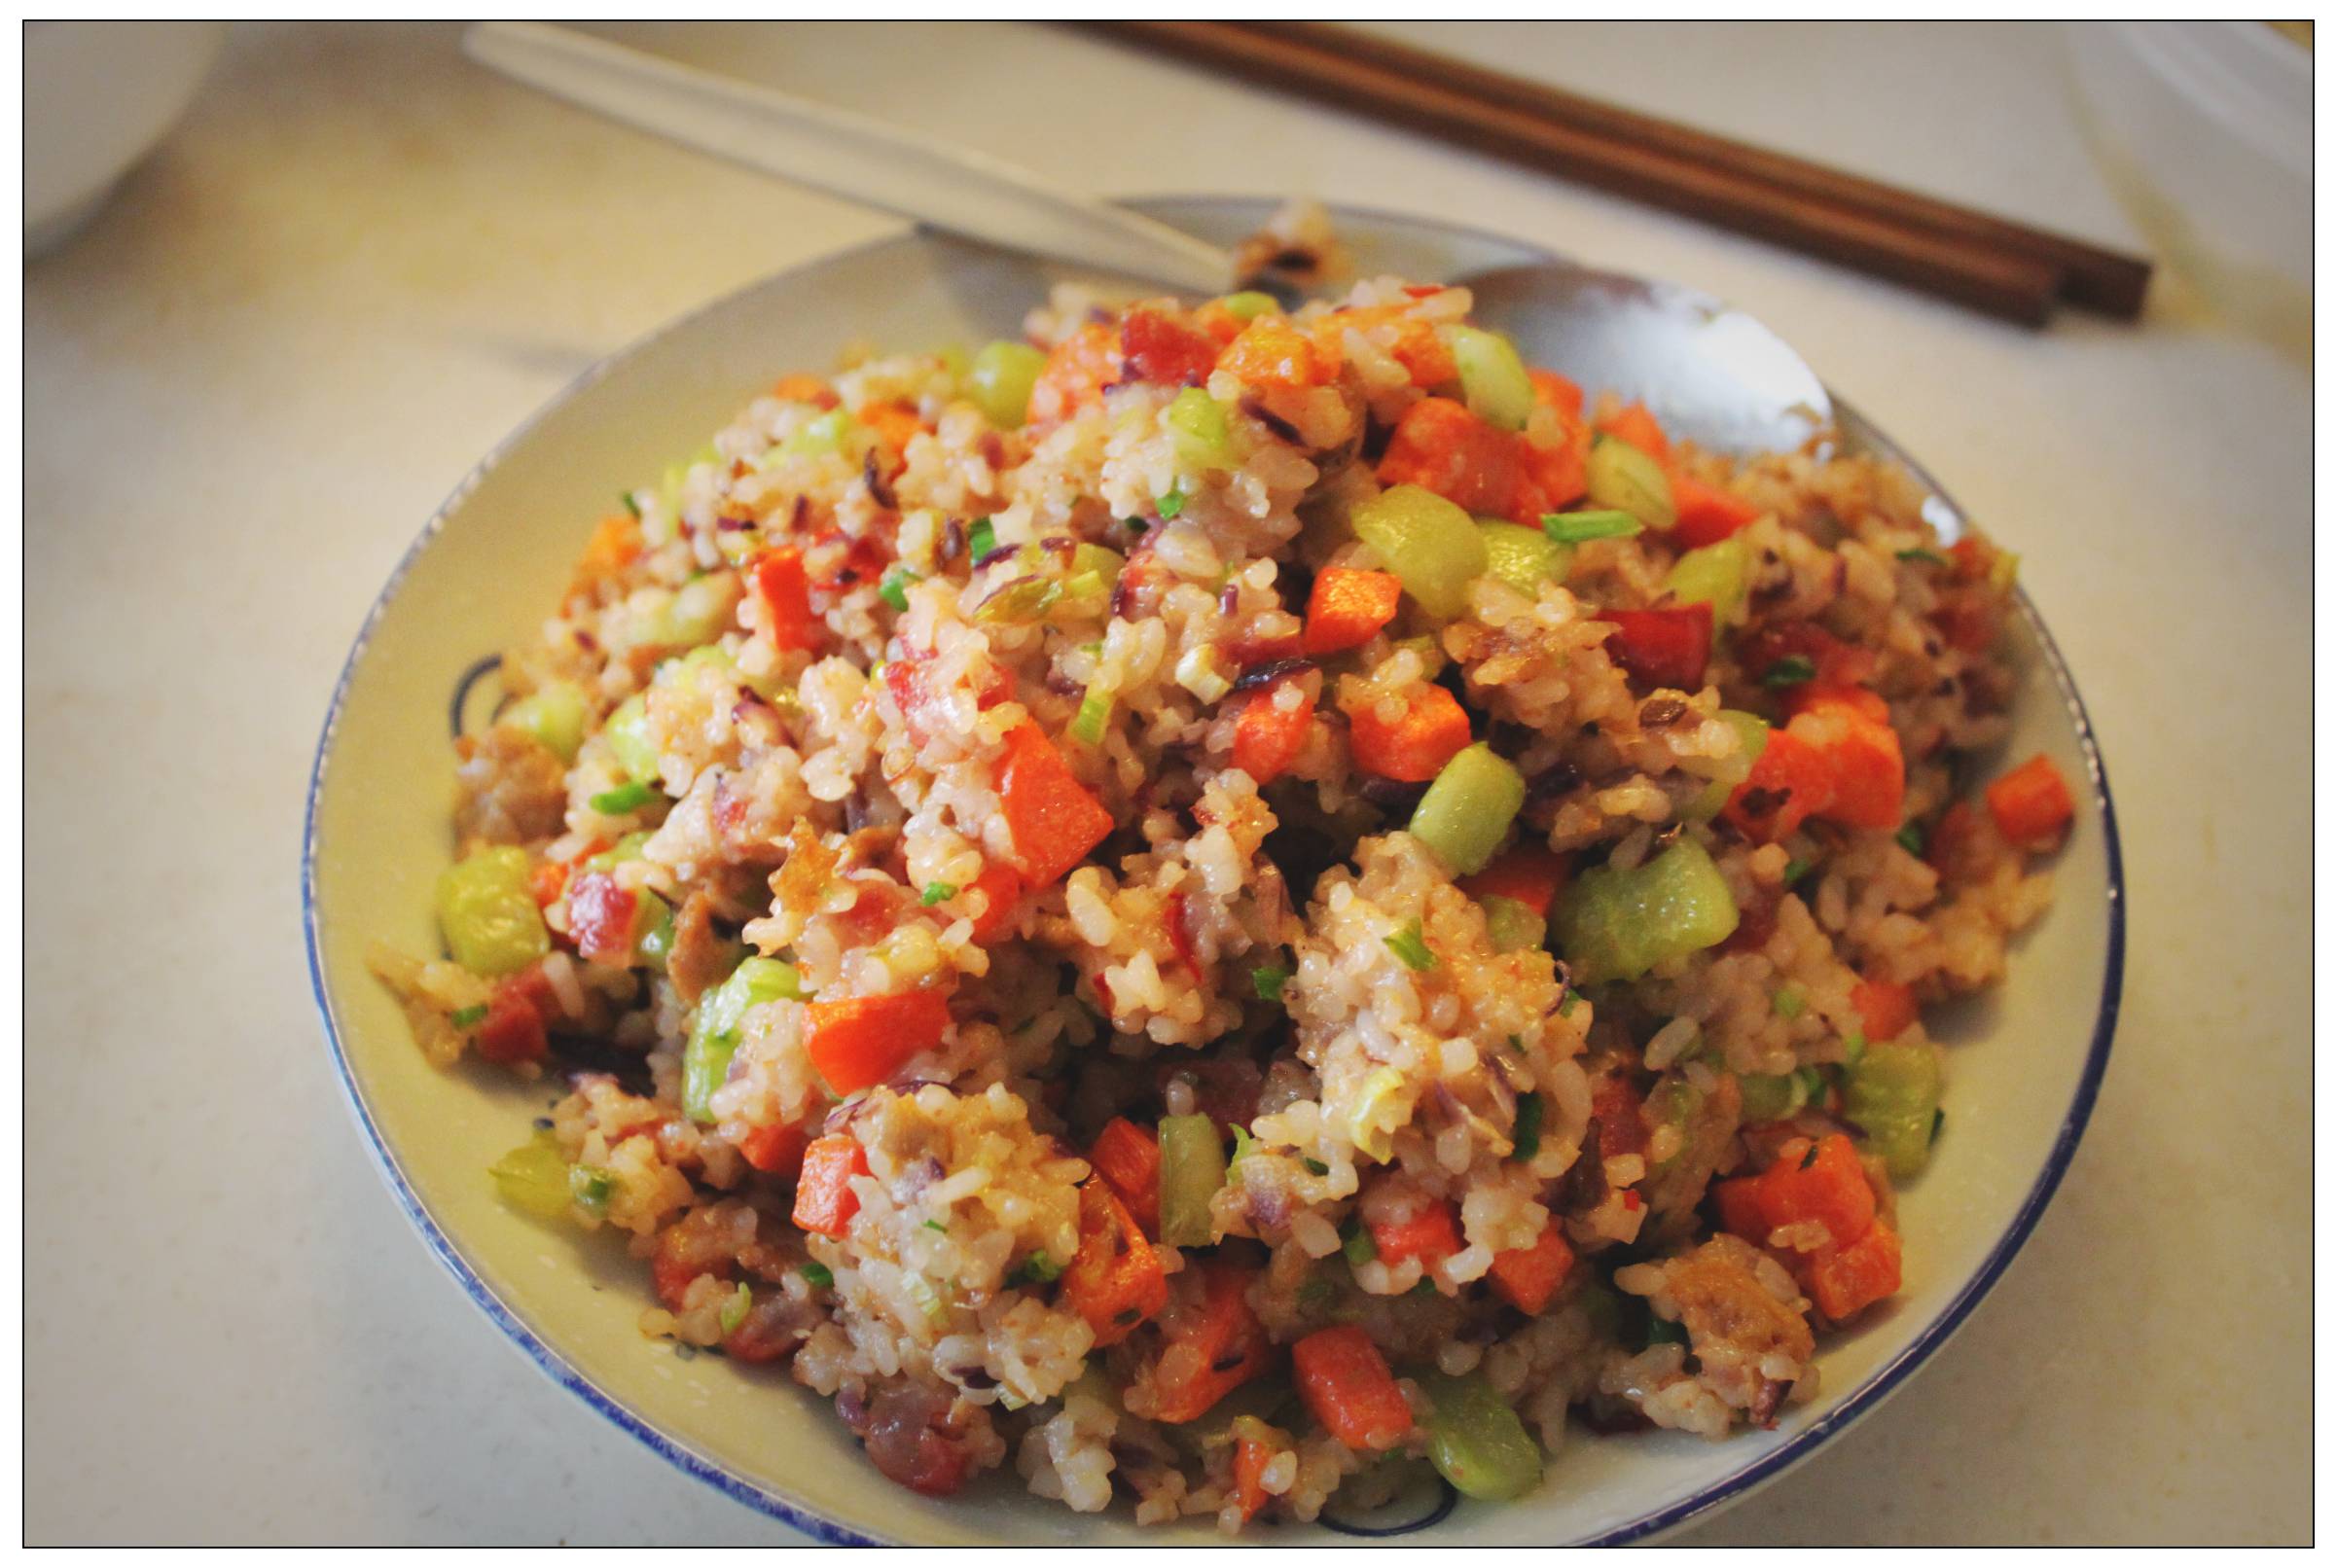 炒米饭就是加入自己爱的蔬菜和味道